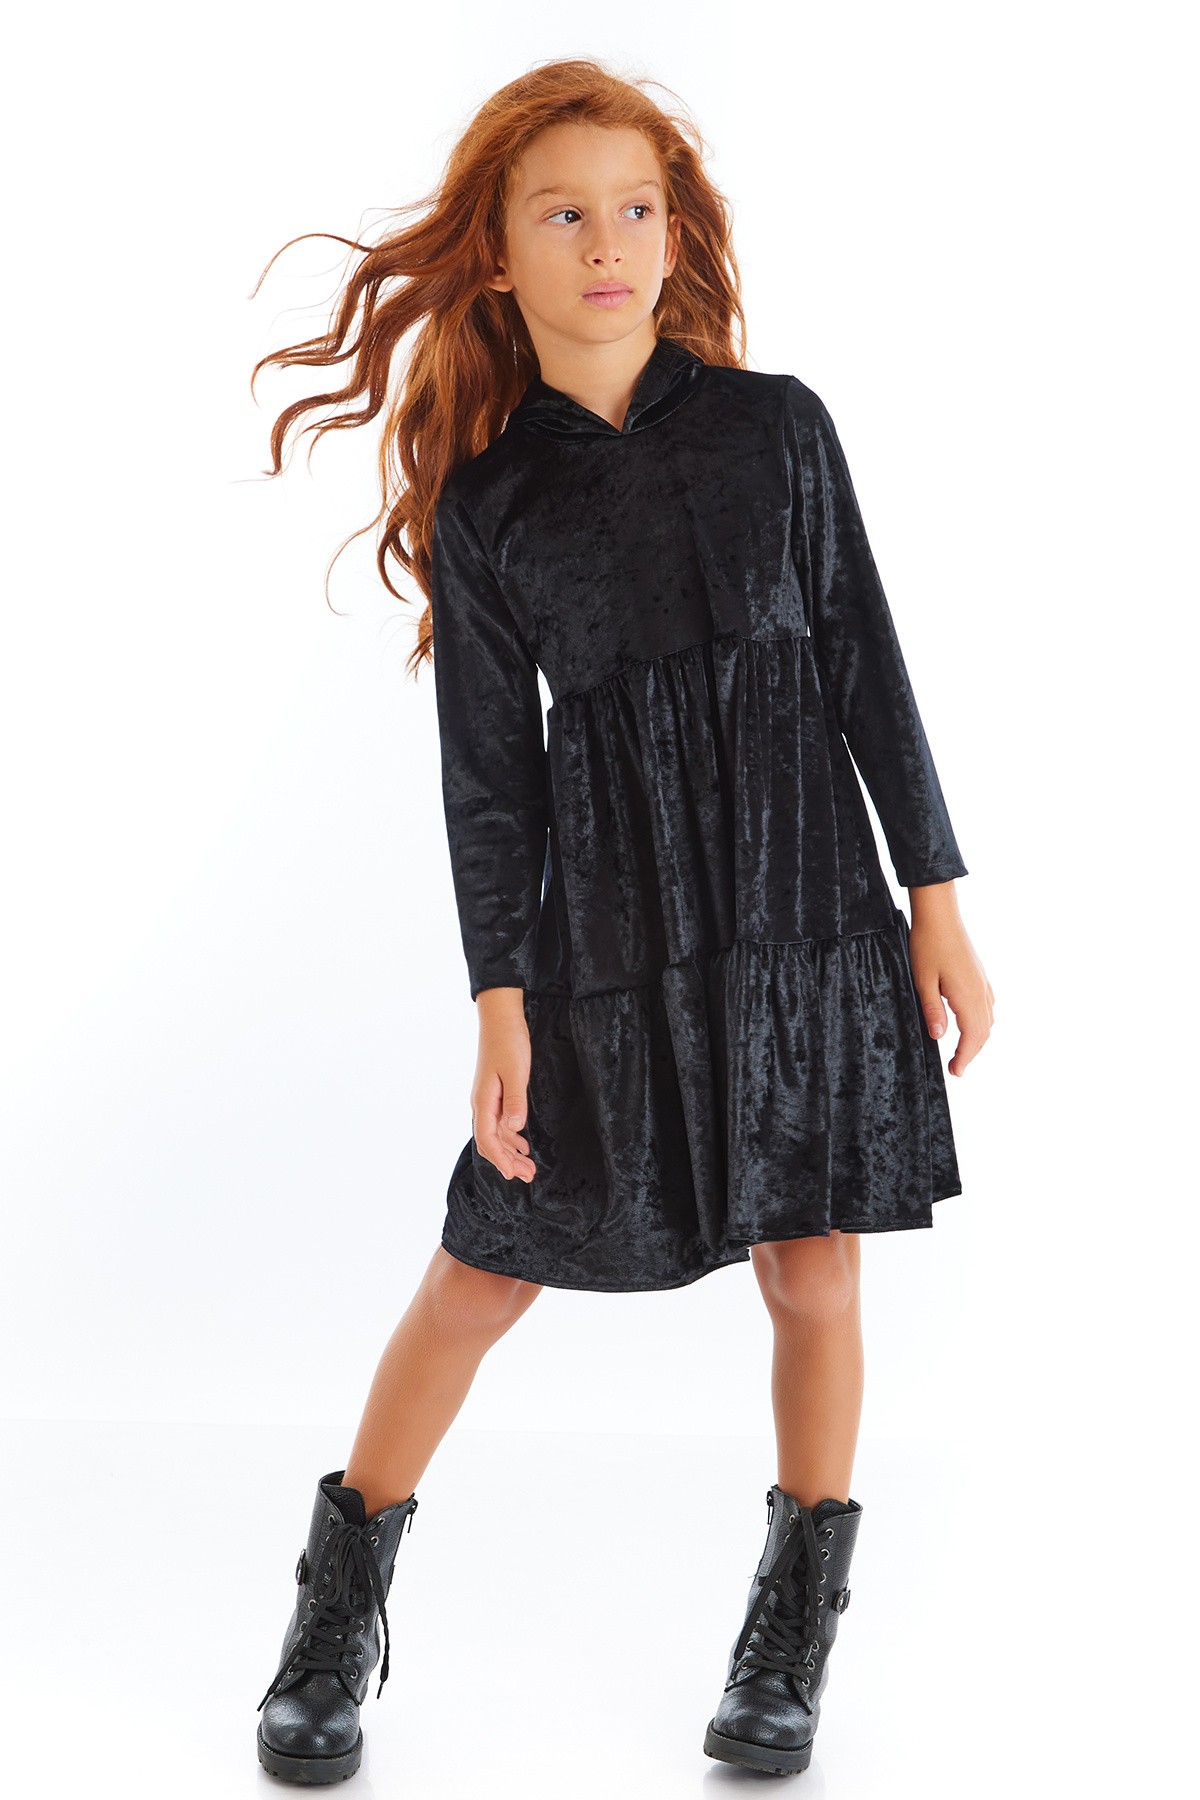 Kadife Kapişonlu Uzun Kollu Eteği Fırfırlı Kız Çocuk Elbise